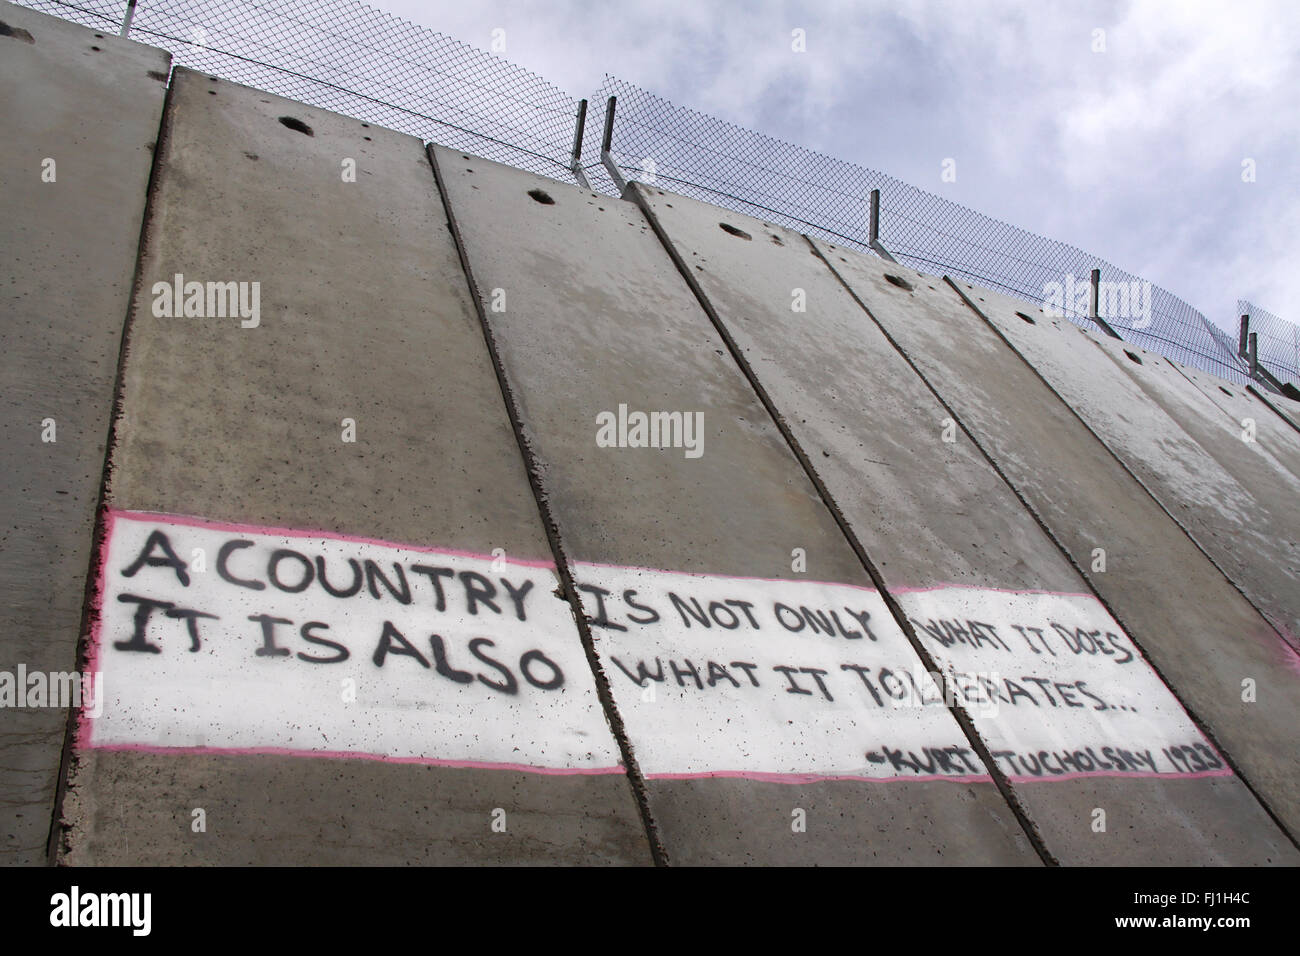 Palestine - Bethlehem checkpoint et de l'occupation mur - Territoires palestiniens occupés Banque D'Images